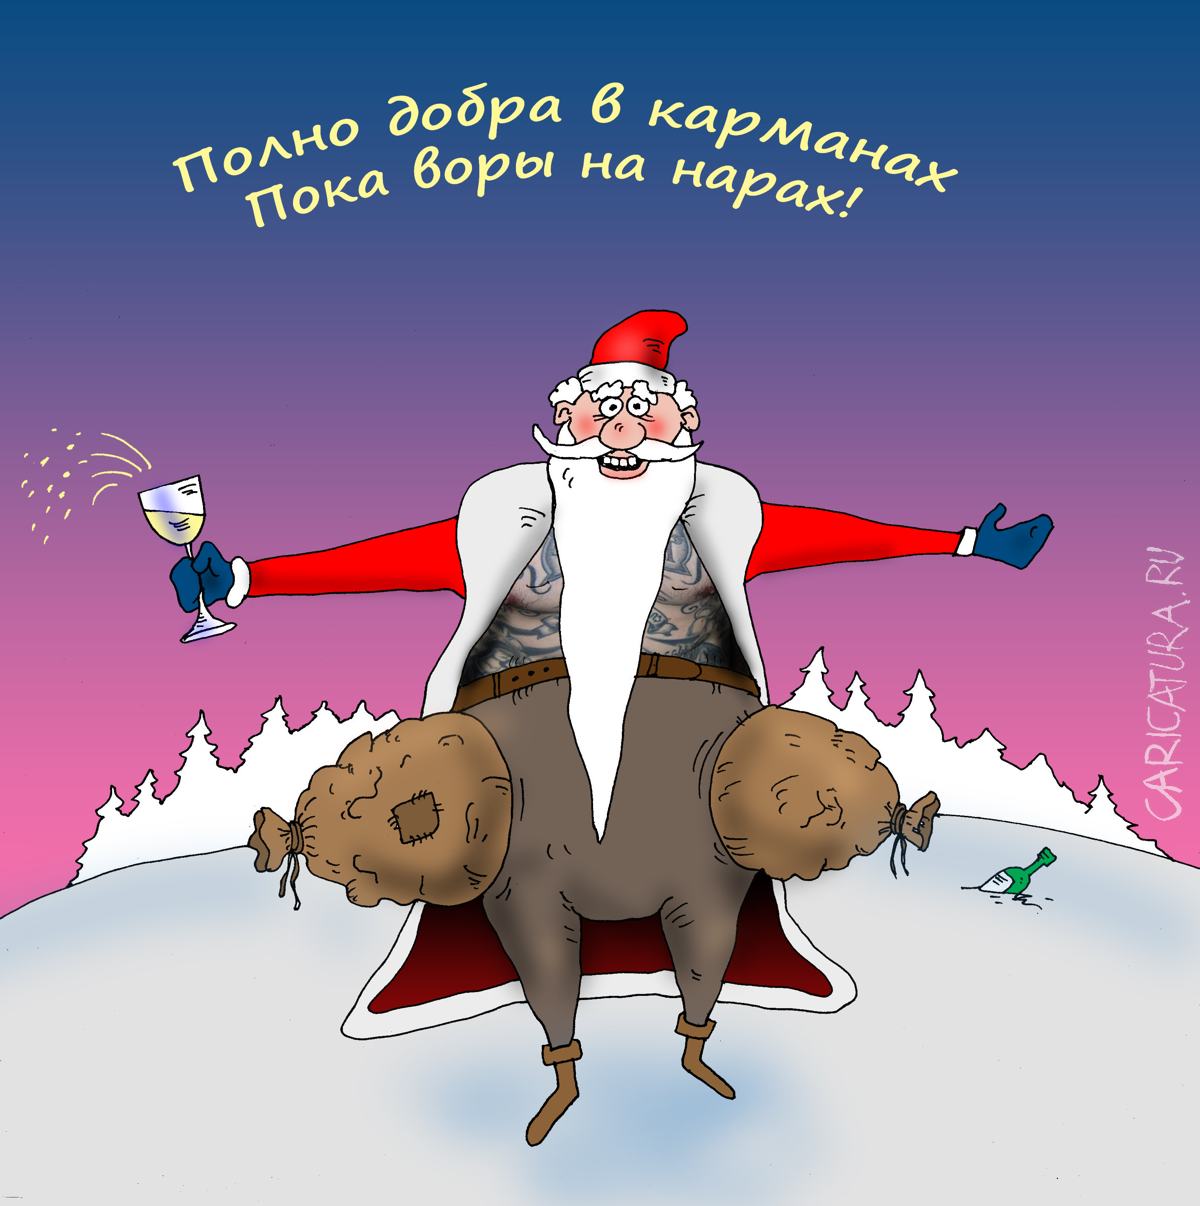 Карикатура "Полно добра", Валерий Тарасенко